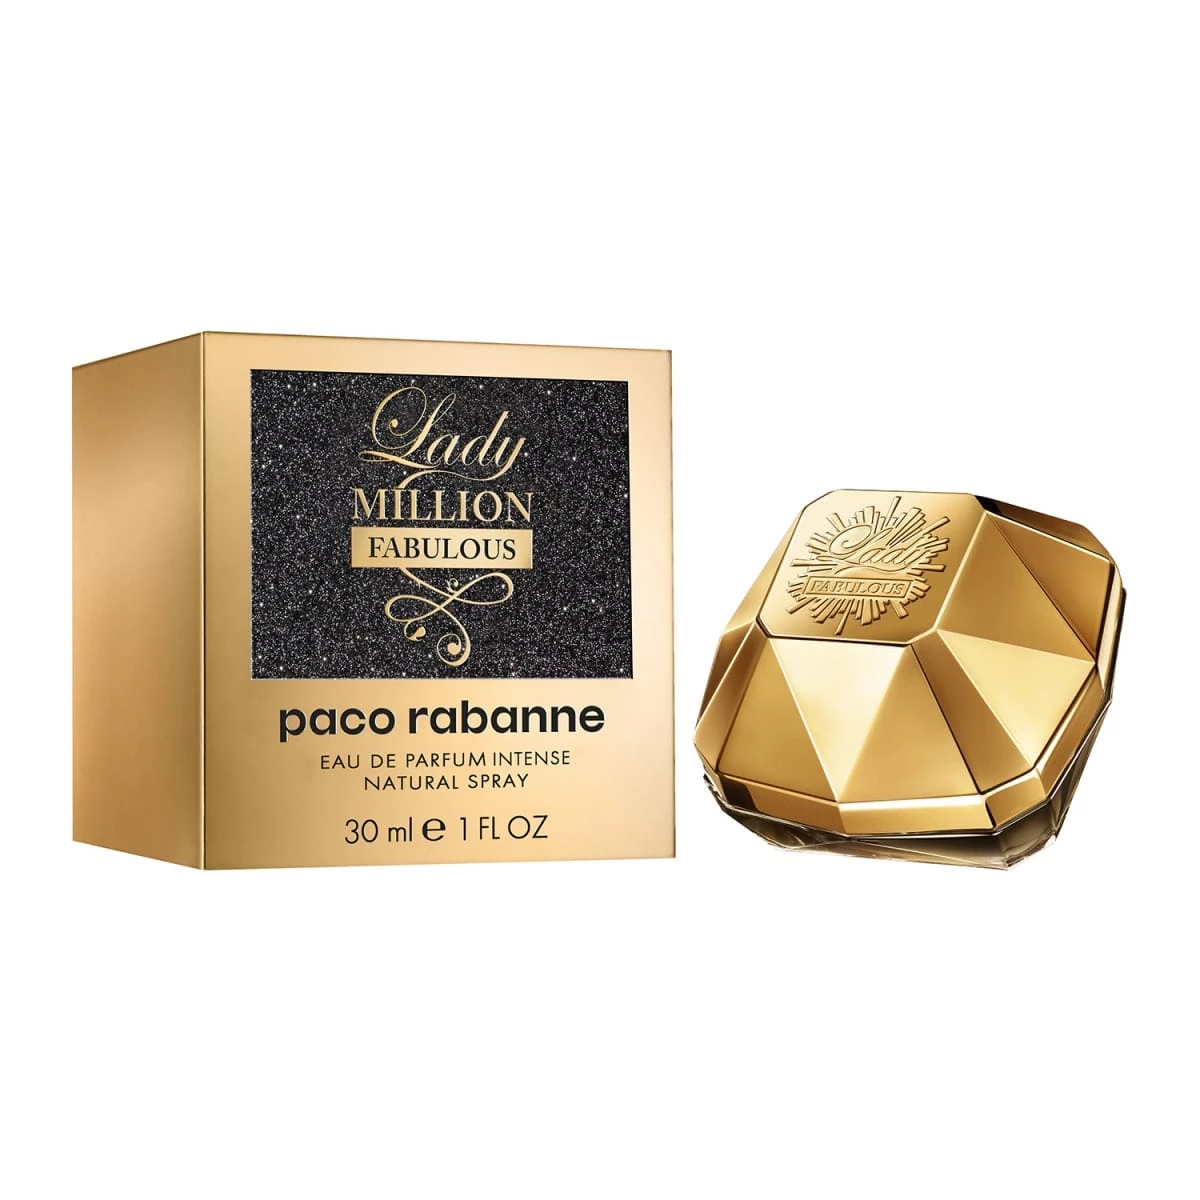 Lady Million Fabulous de PACO RABANNE - Eau de Parfum - Incenza